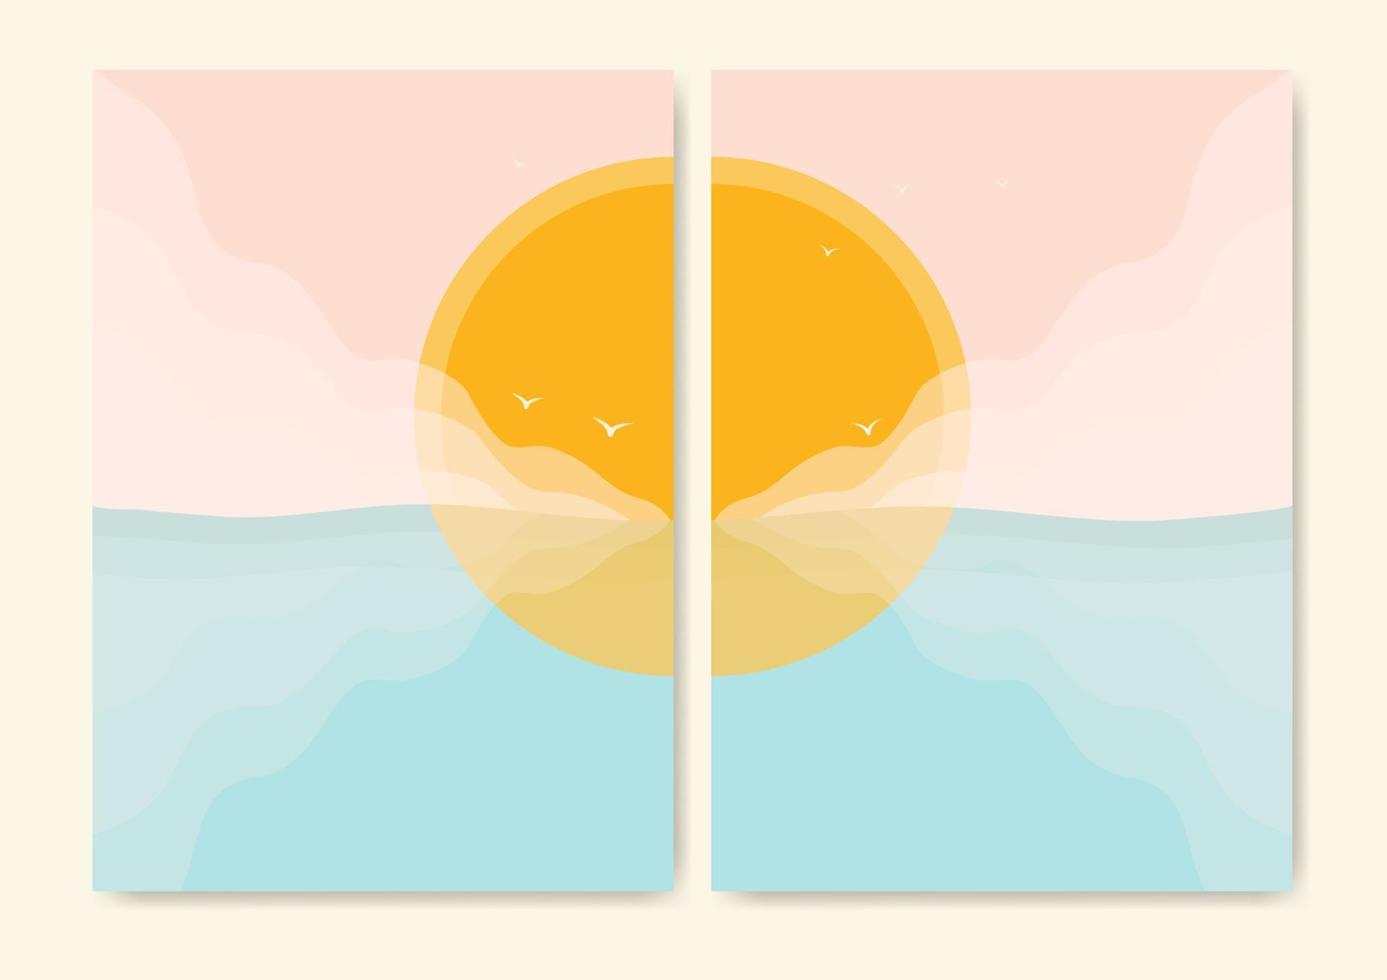 impressão minimalista e moderna do lado do oceano. onda do mar e paisagem estética do sol. horizonte, ilustração vetorial de onda vetor